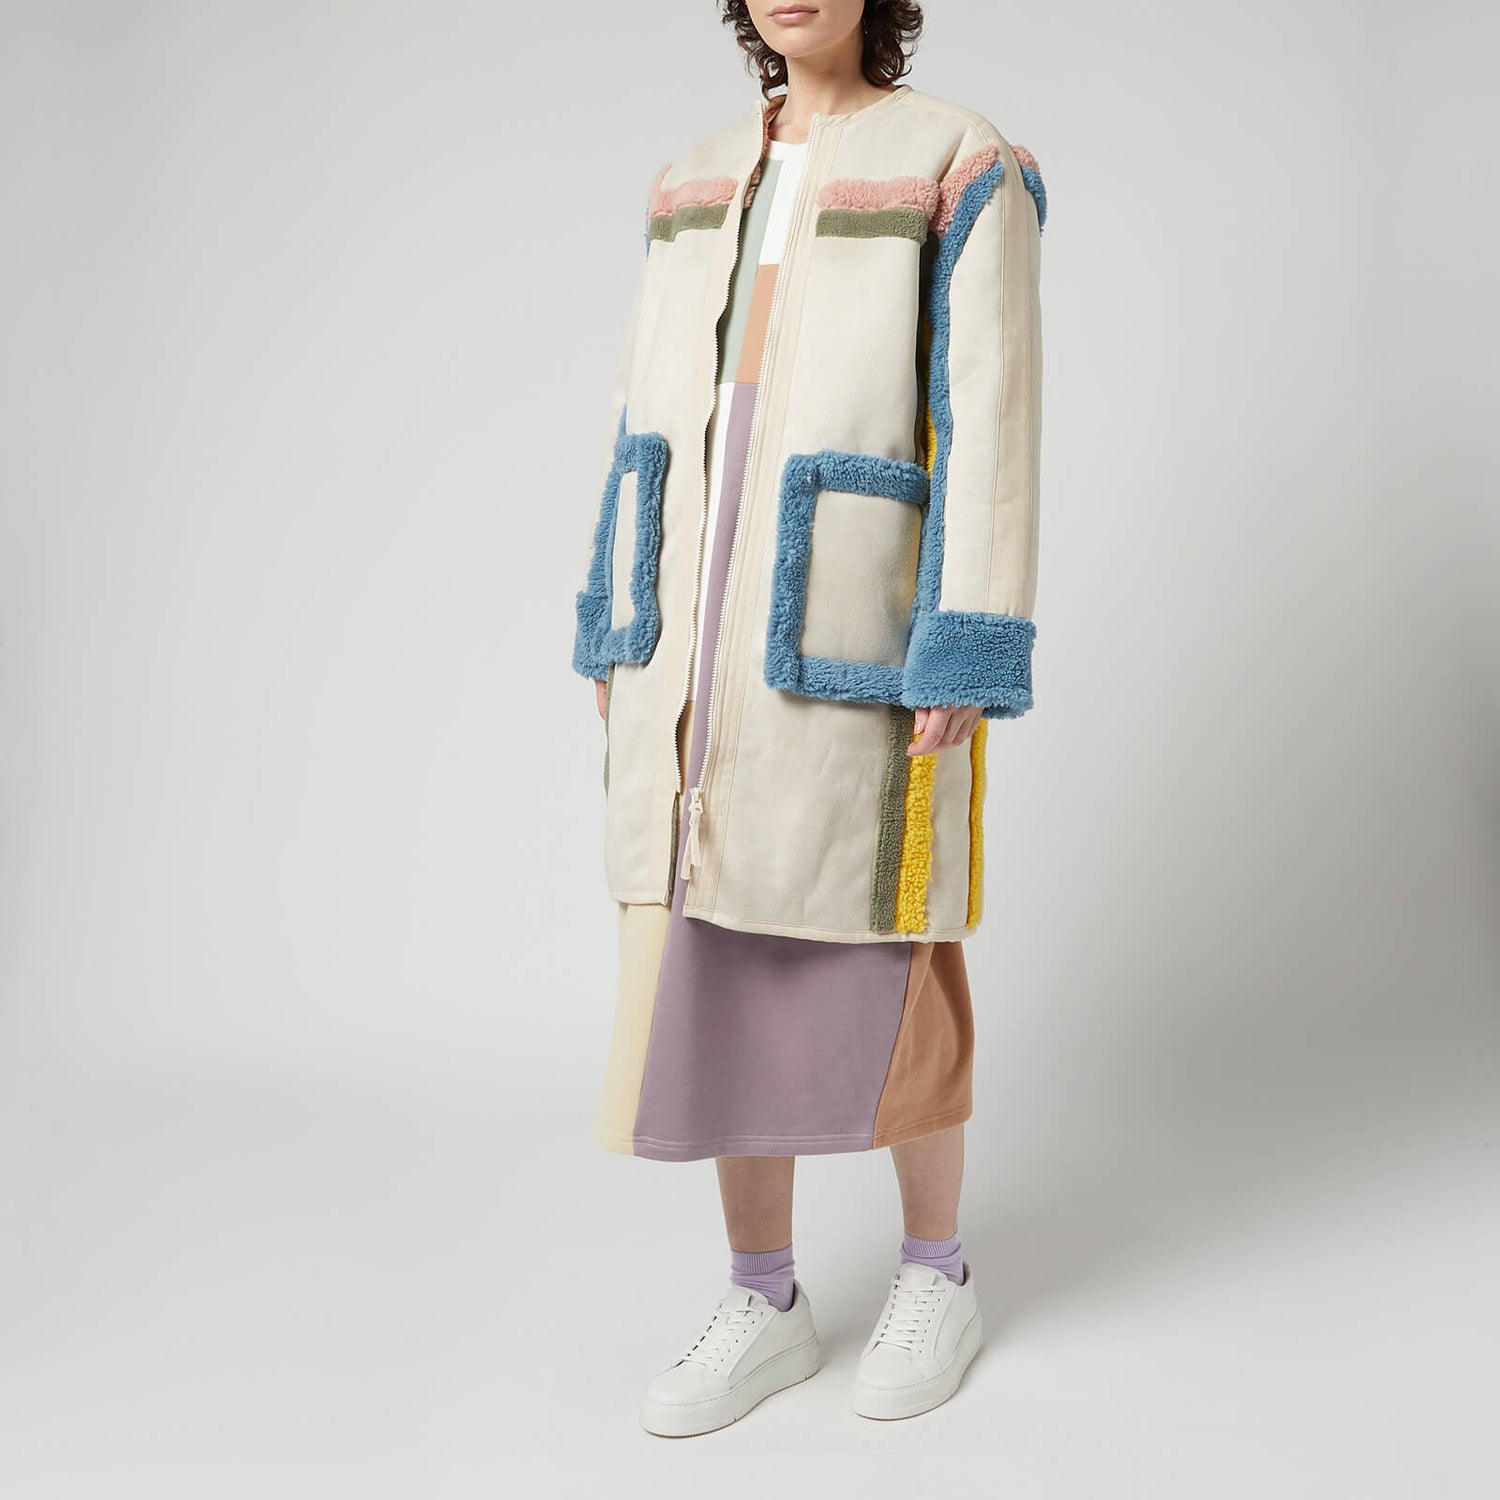 L.F Markey Women's Heath Coat - Pastels - S-M